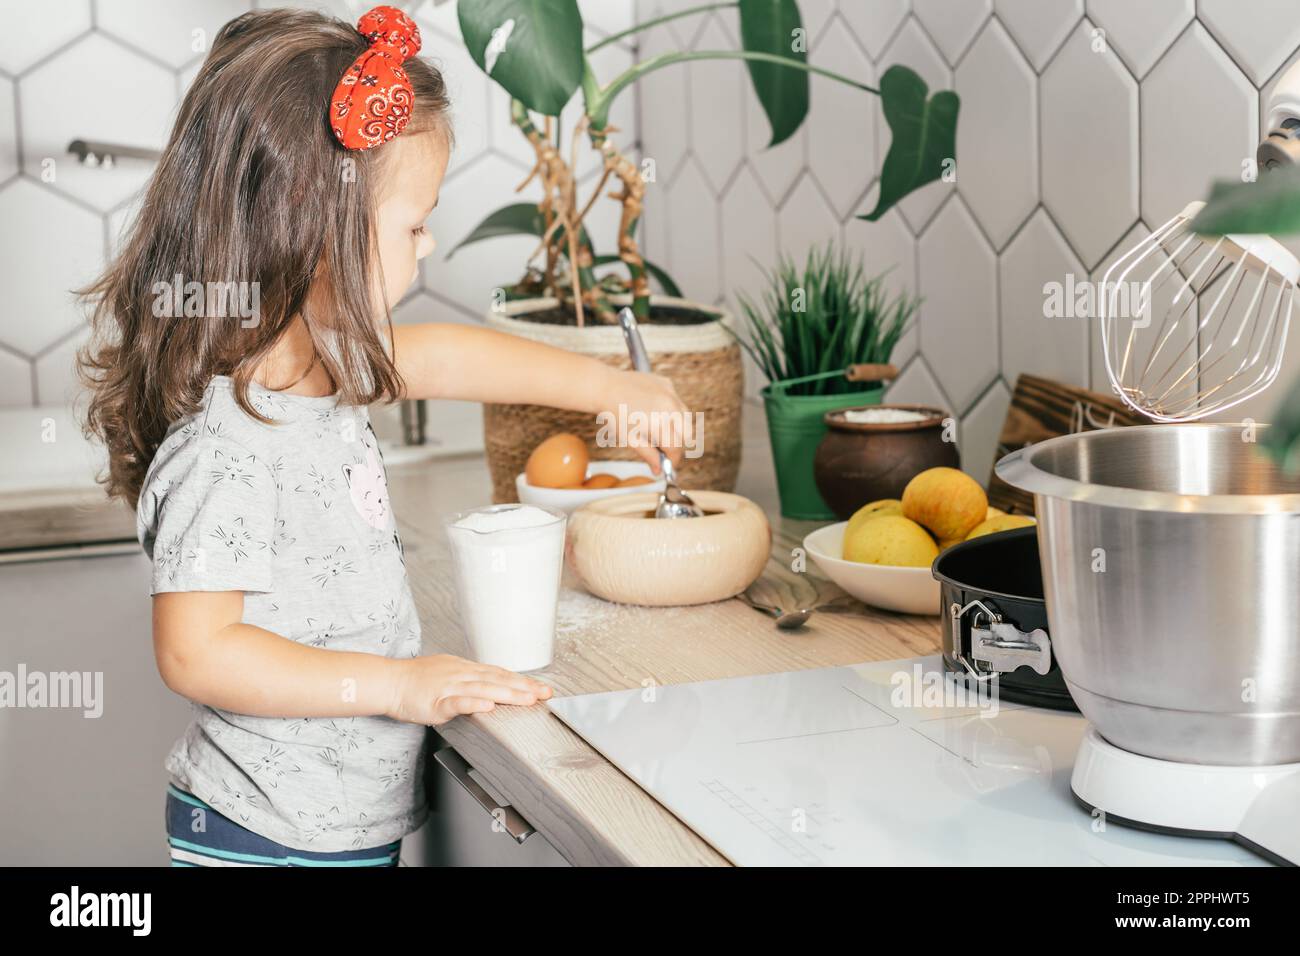 Ein dunkelhaariges Mädchen, 3 Jahre alt, mit rotem Haarband, backt Apfelkuchen in der Küche. Das Kind gibt Zucker in den Messbecher Stockfoto